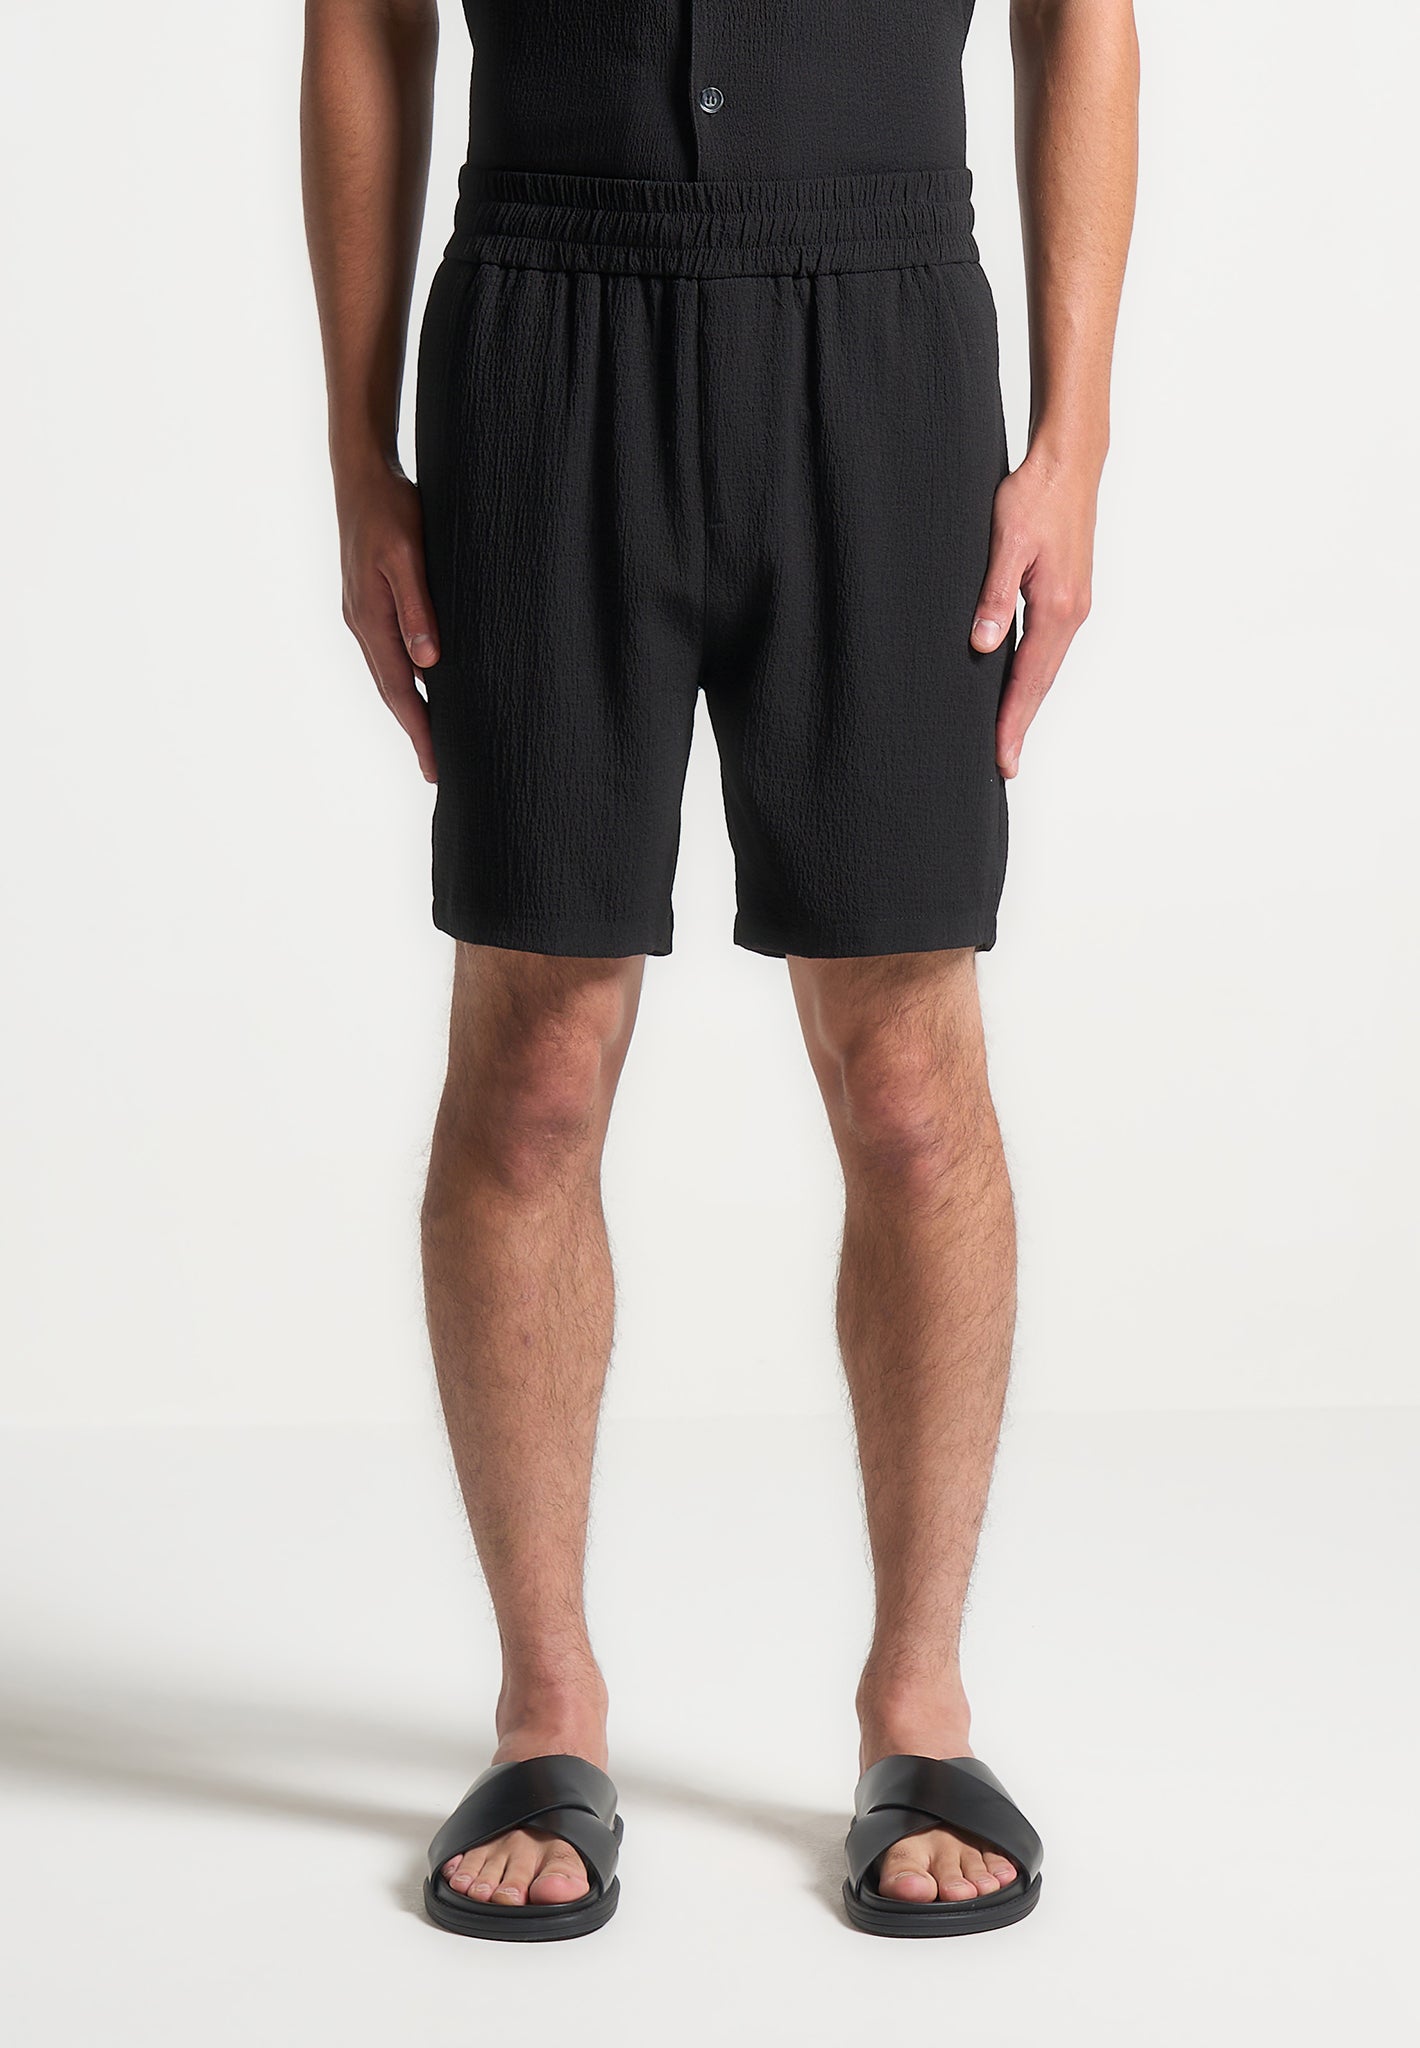 seersucker-shorts-black